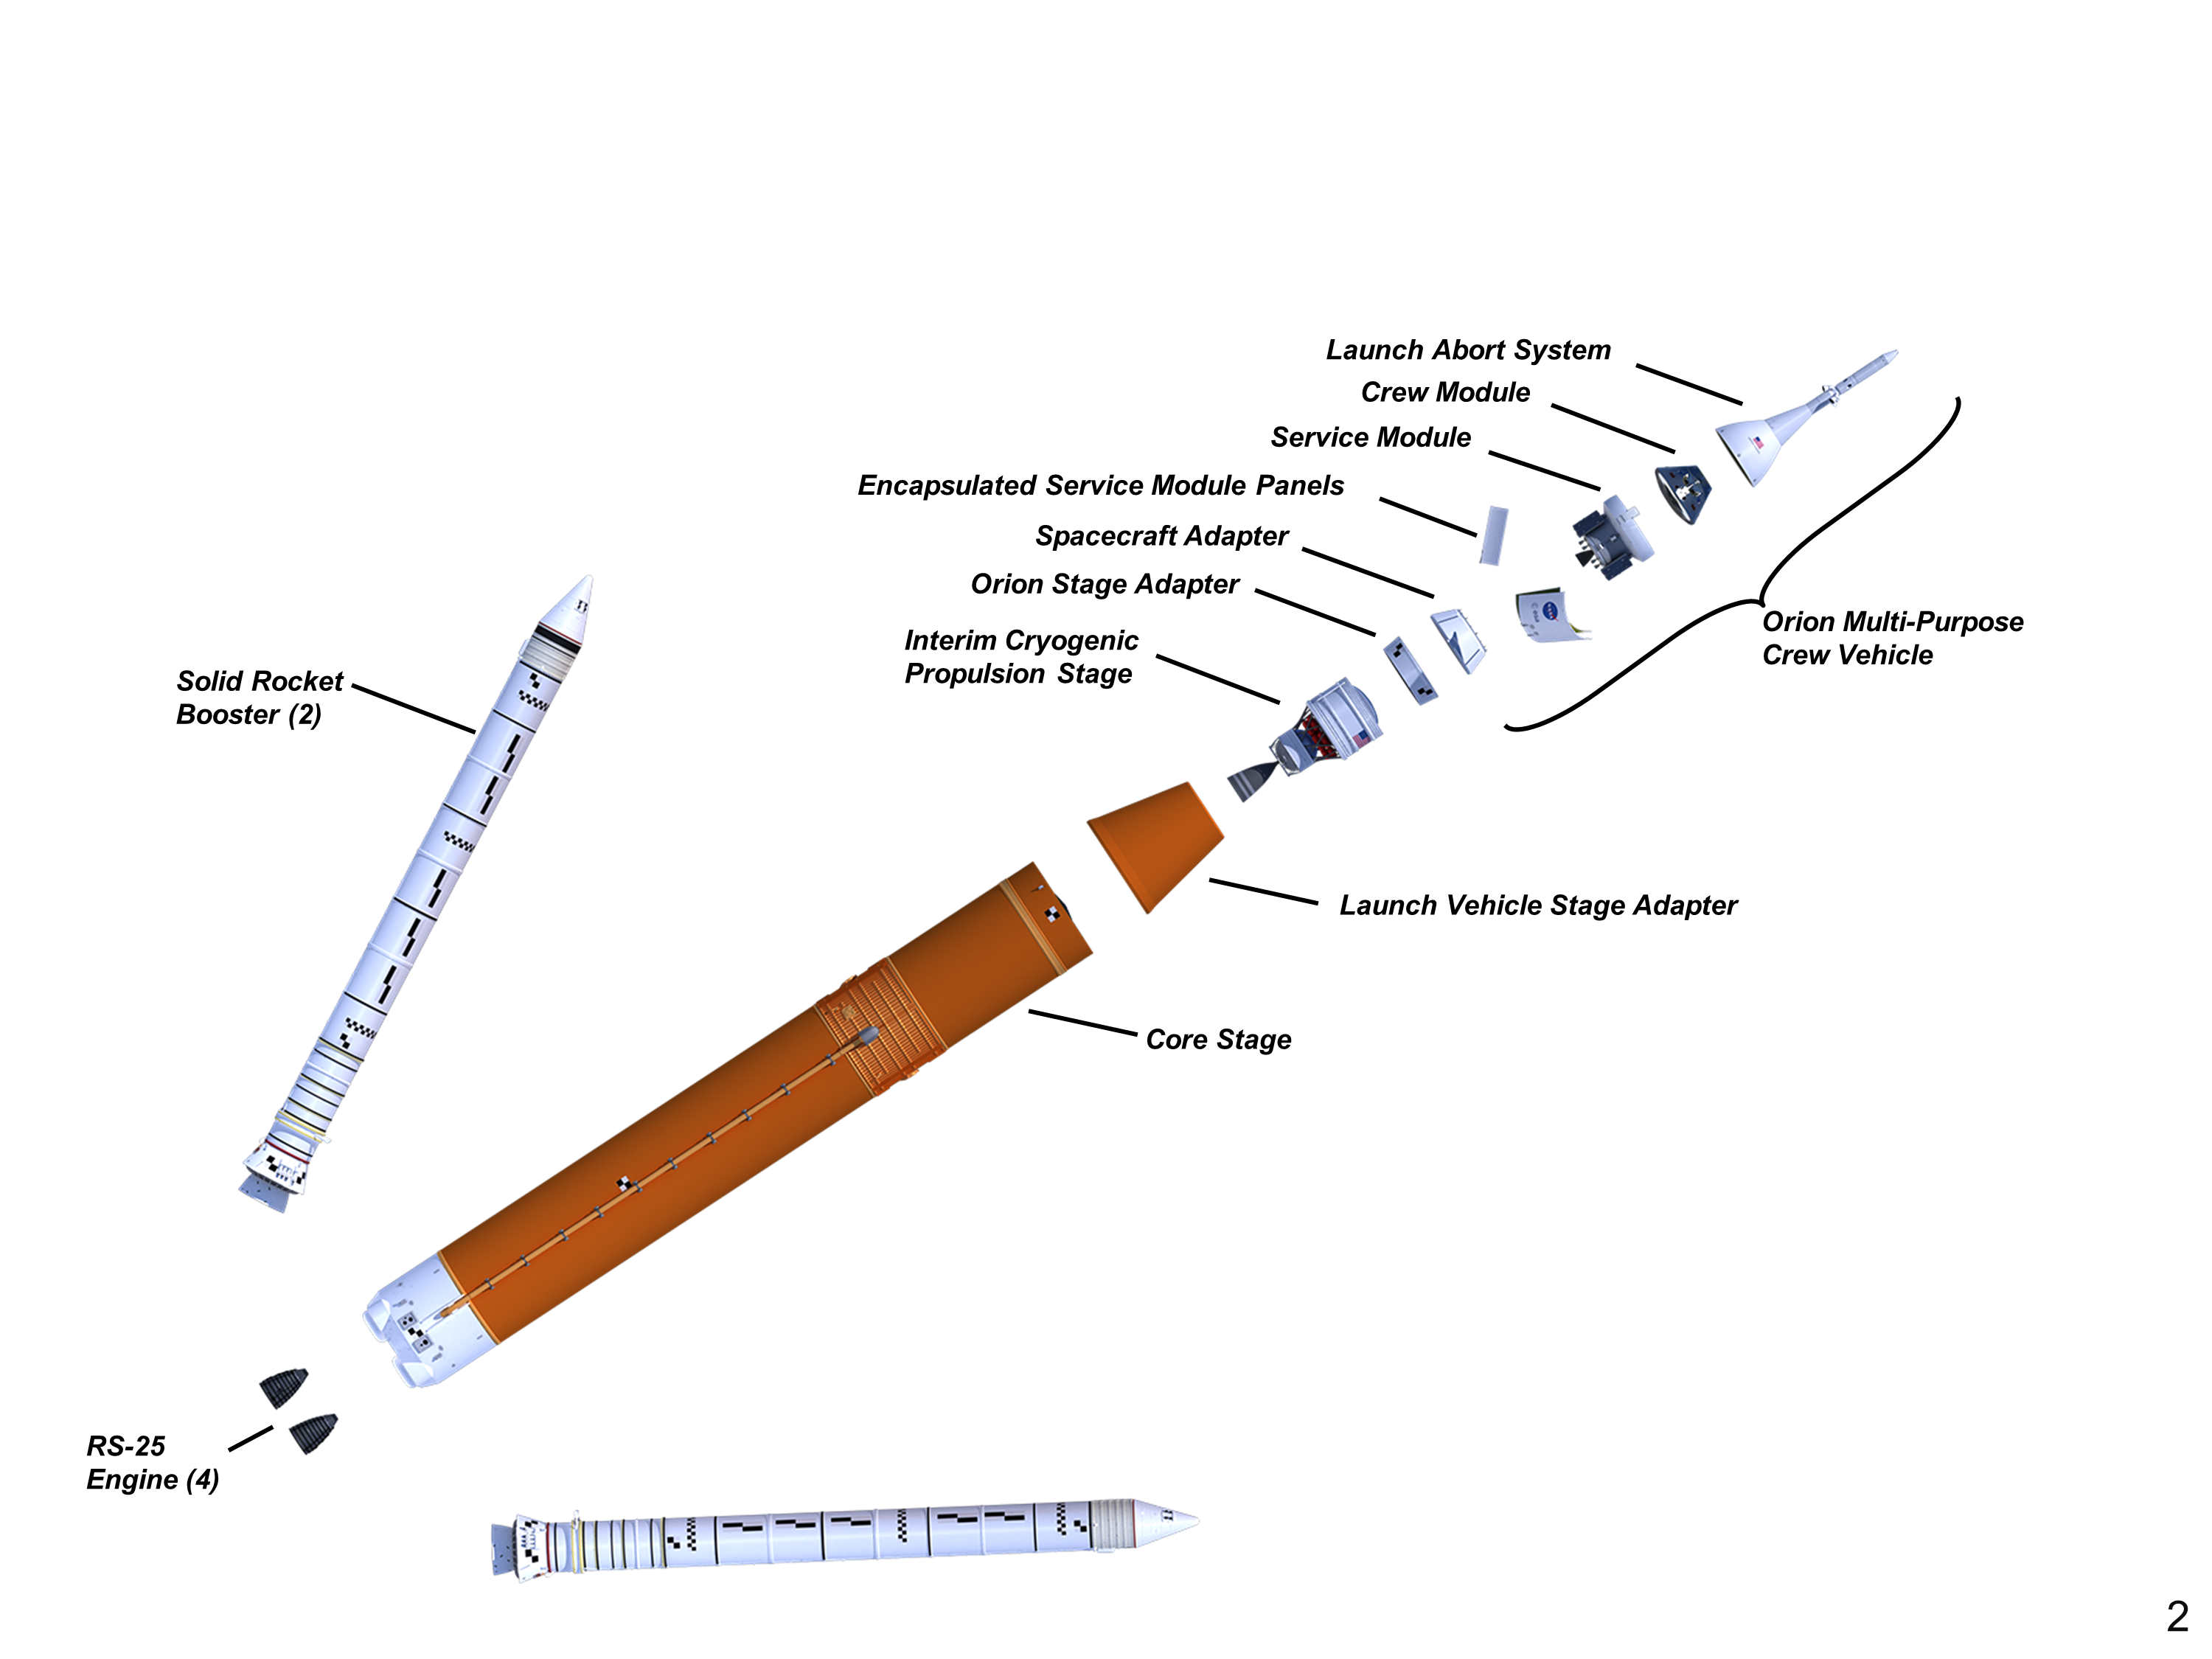 Initial SLS Configuration. (NASA)